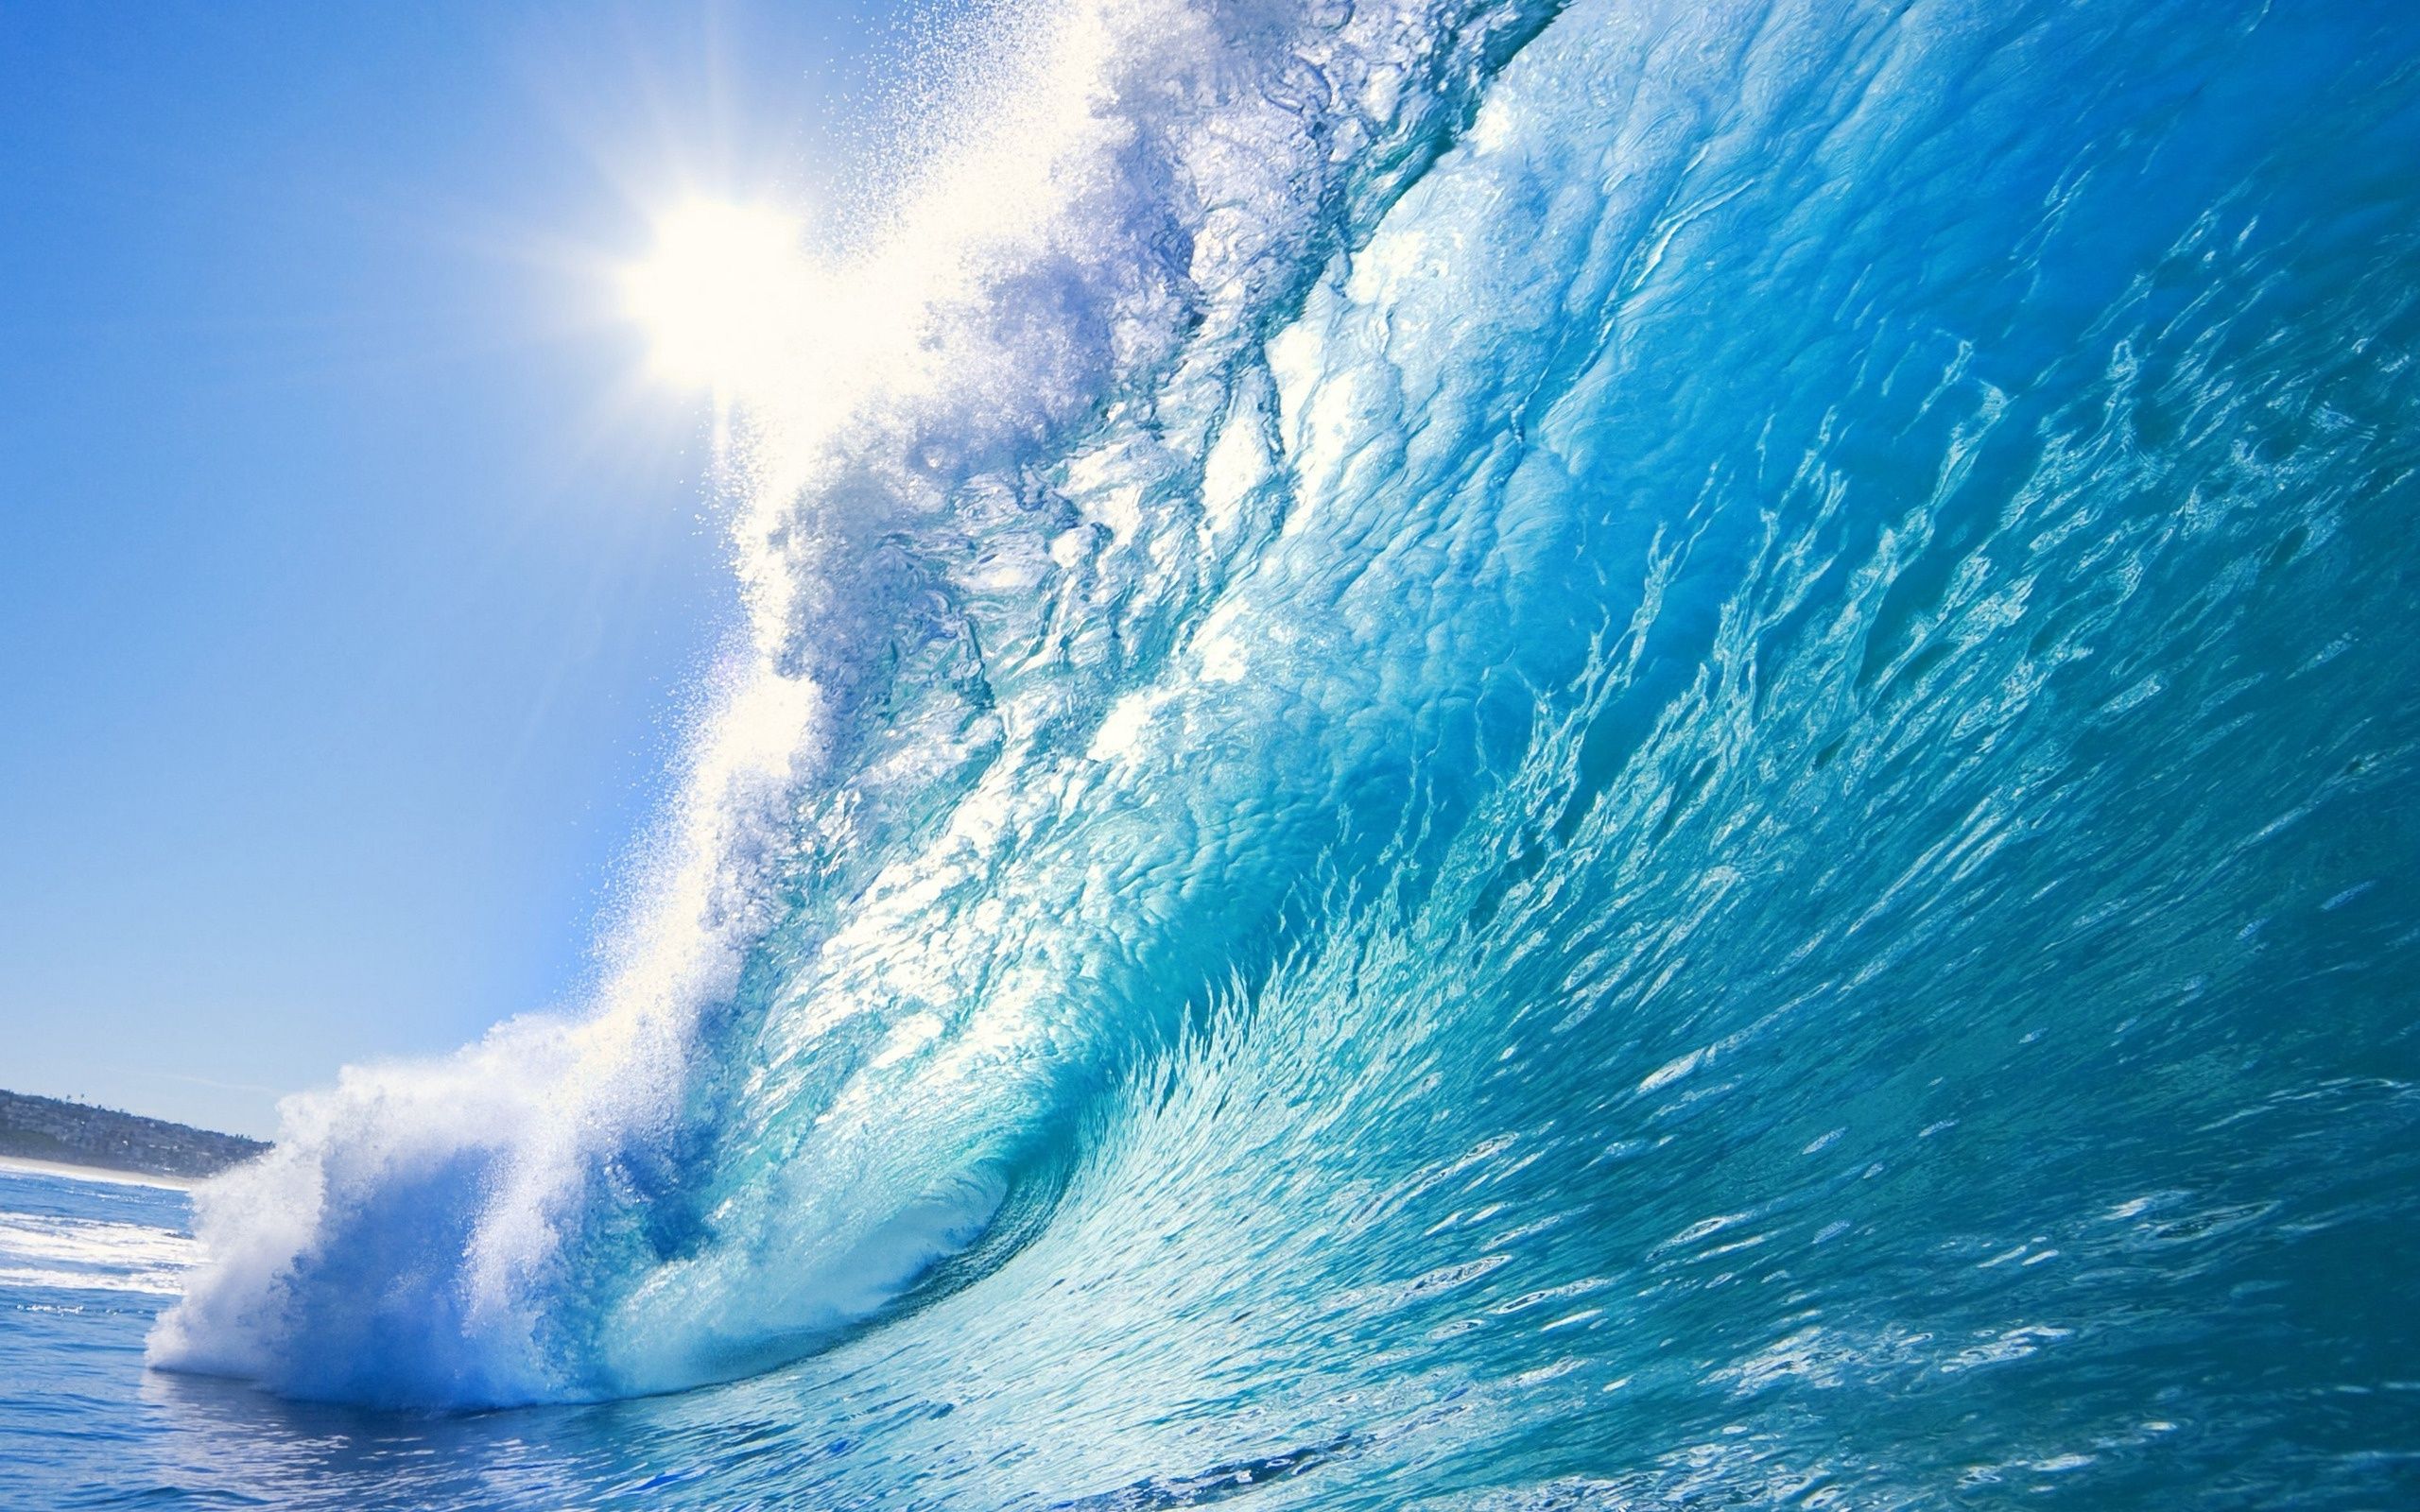 Cảm nhận tốc độ và sức mạnh của những cơn sóng vượt cao trong bức ảnh đậm chất biển khơi. Hãy cùng chiêm ngưỡng vẻ đẹp hoang sơ và đầy sức sống của các con sóng.